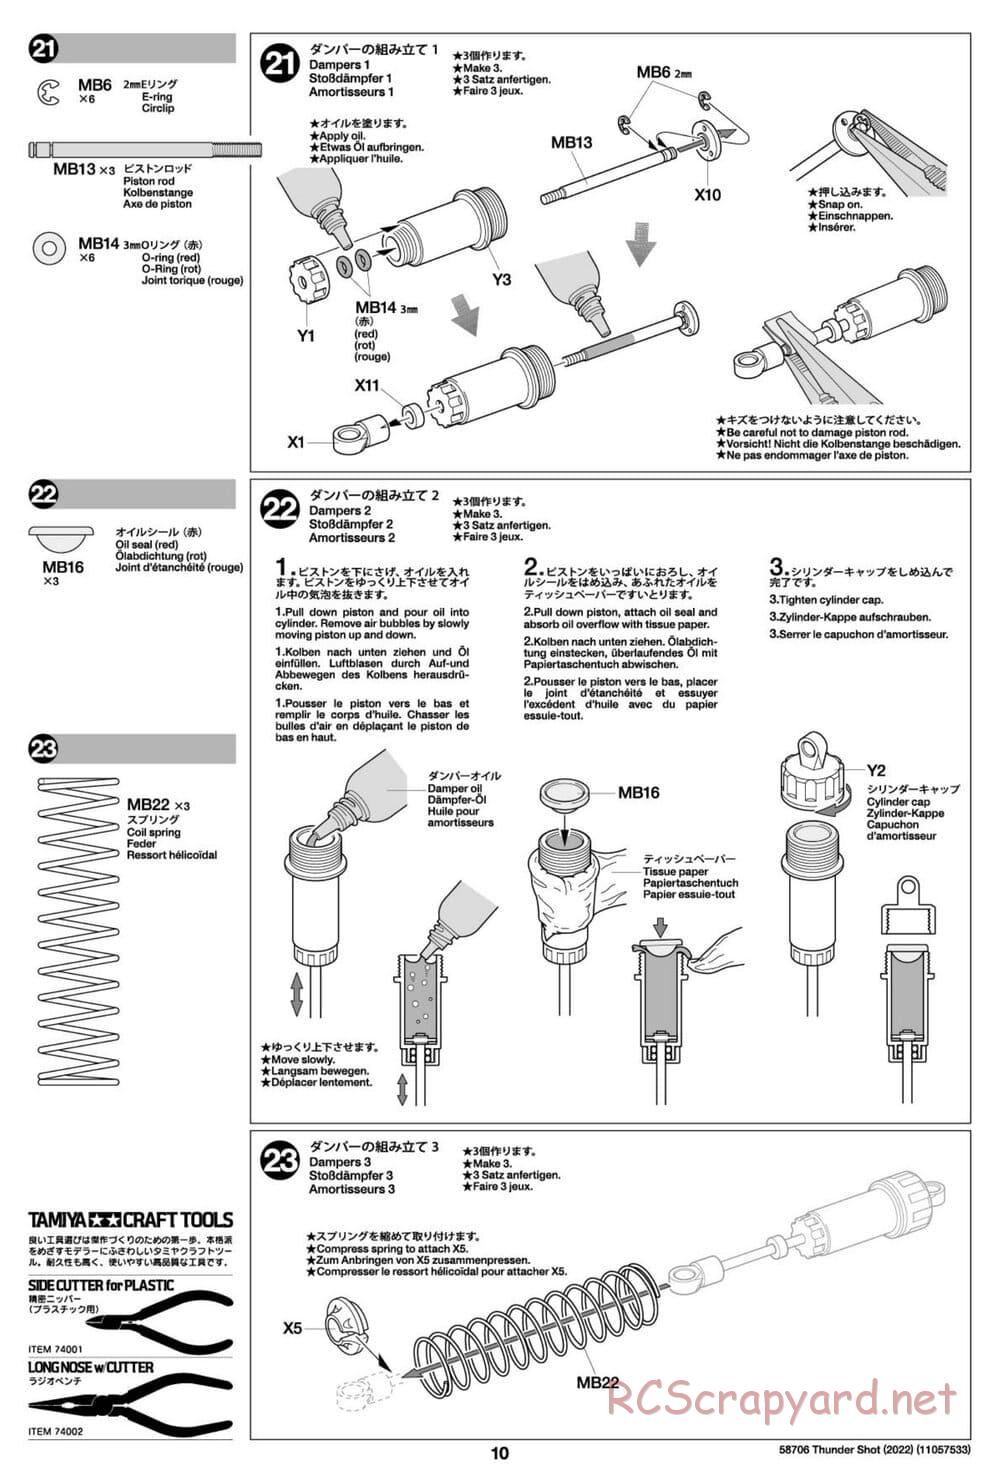 Tamiya - Thunder Shot (2022) - TS1/TS2 Chassis - Manual - Page 10